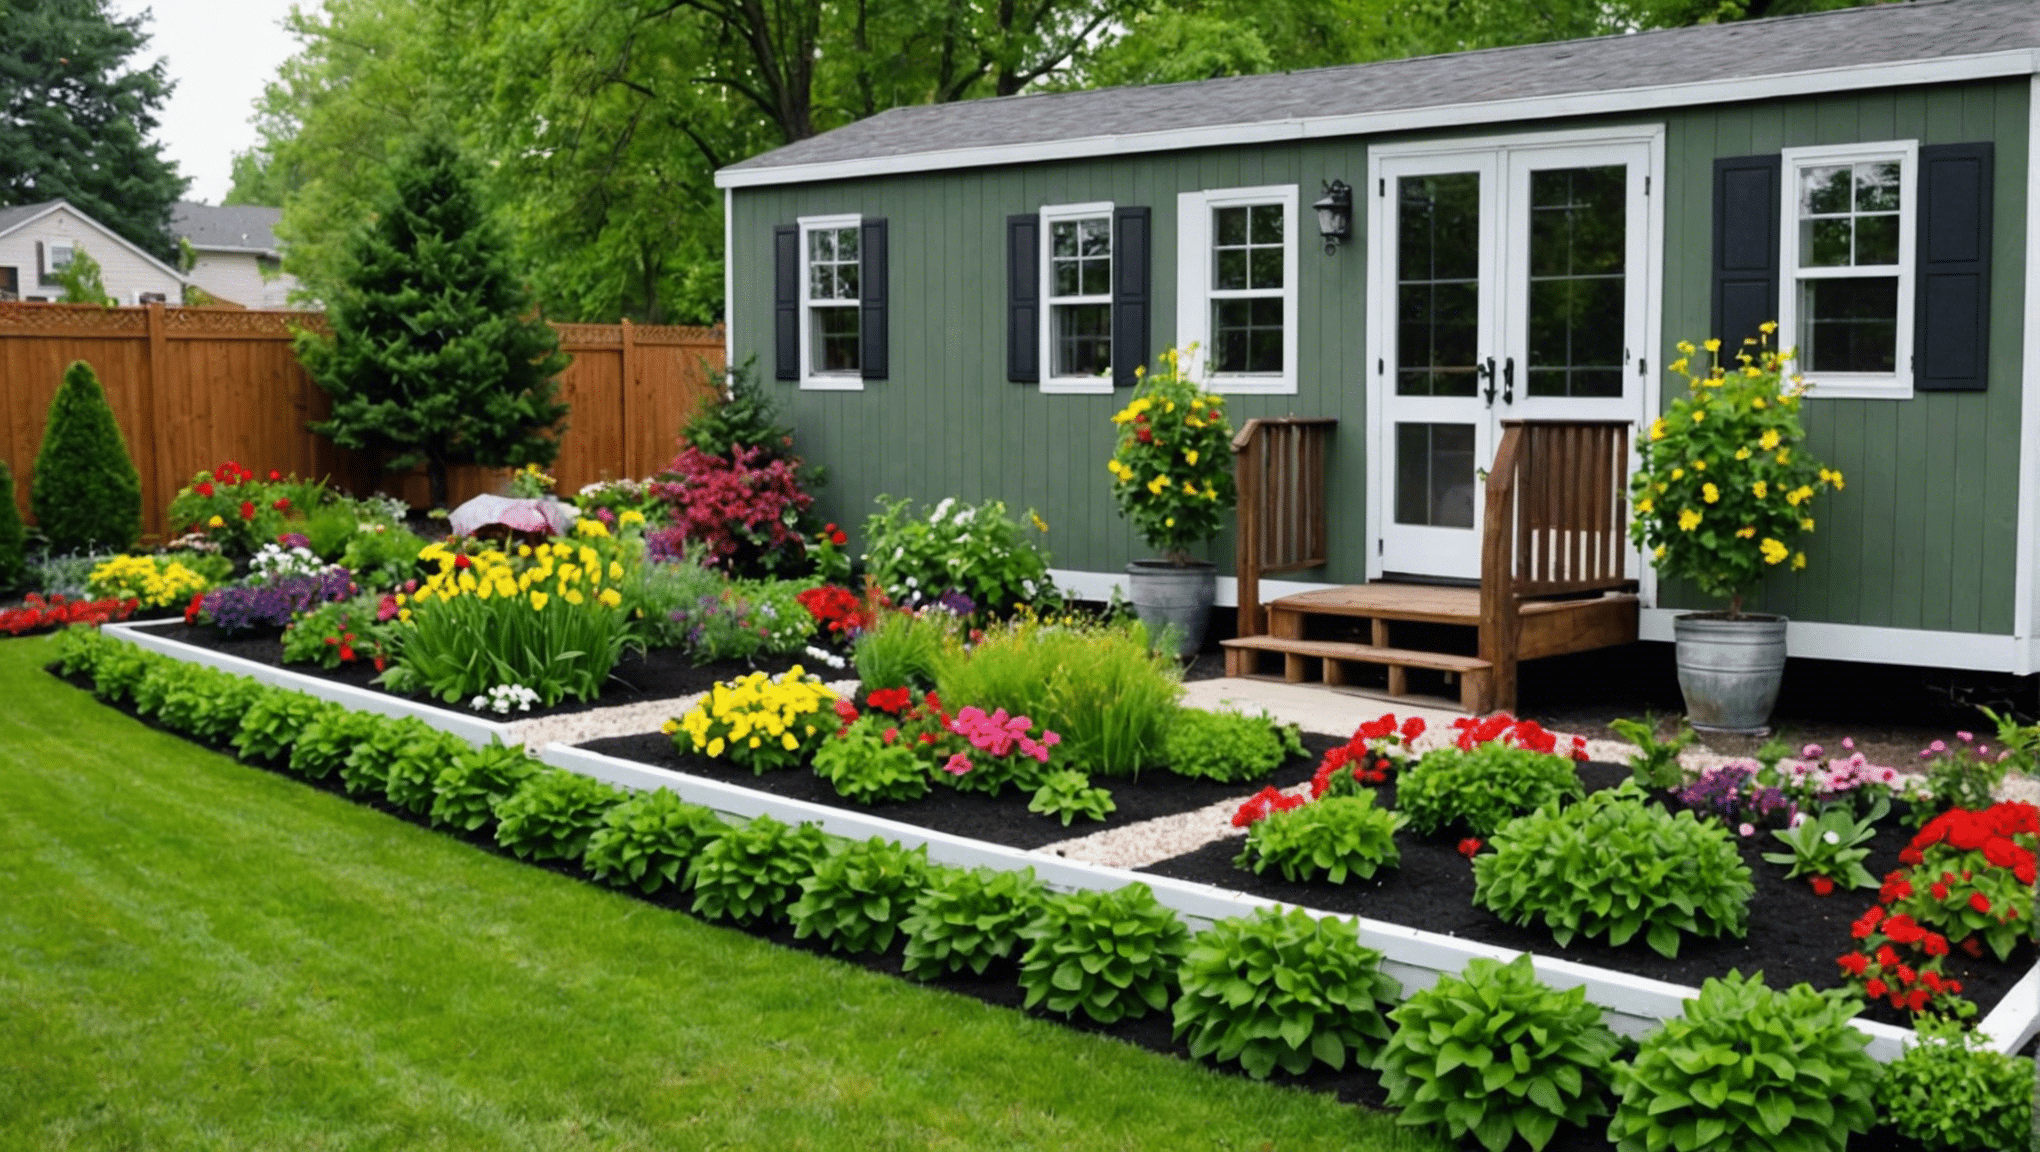 scopri idee creative per incorporare un giardino nello spazio abitativo della tua casa mobile con la nostra utile guida.